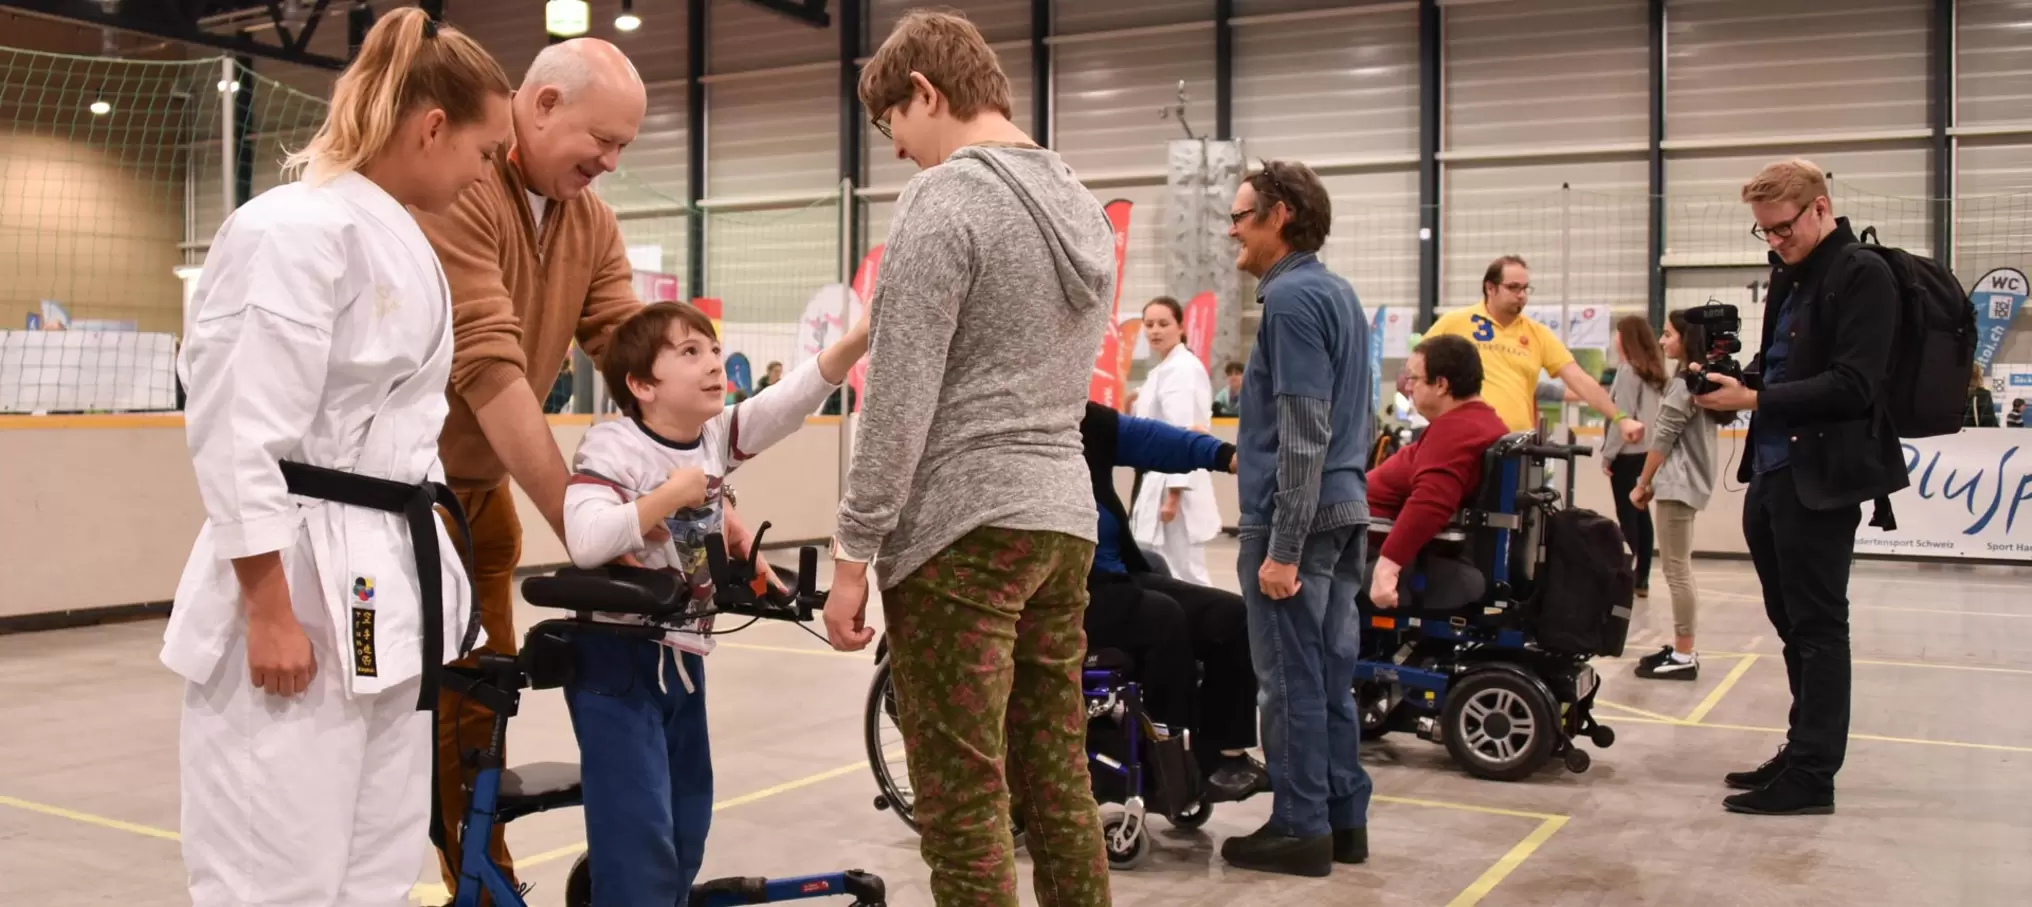 An Events wie der Swiss Handicap Messe kommen Menschen mit und ohne Beeinträchtigung zusammen